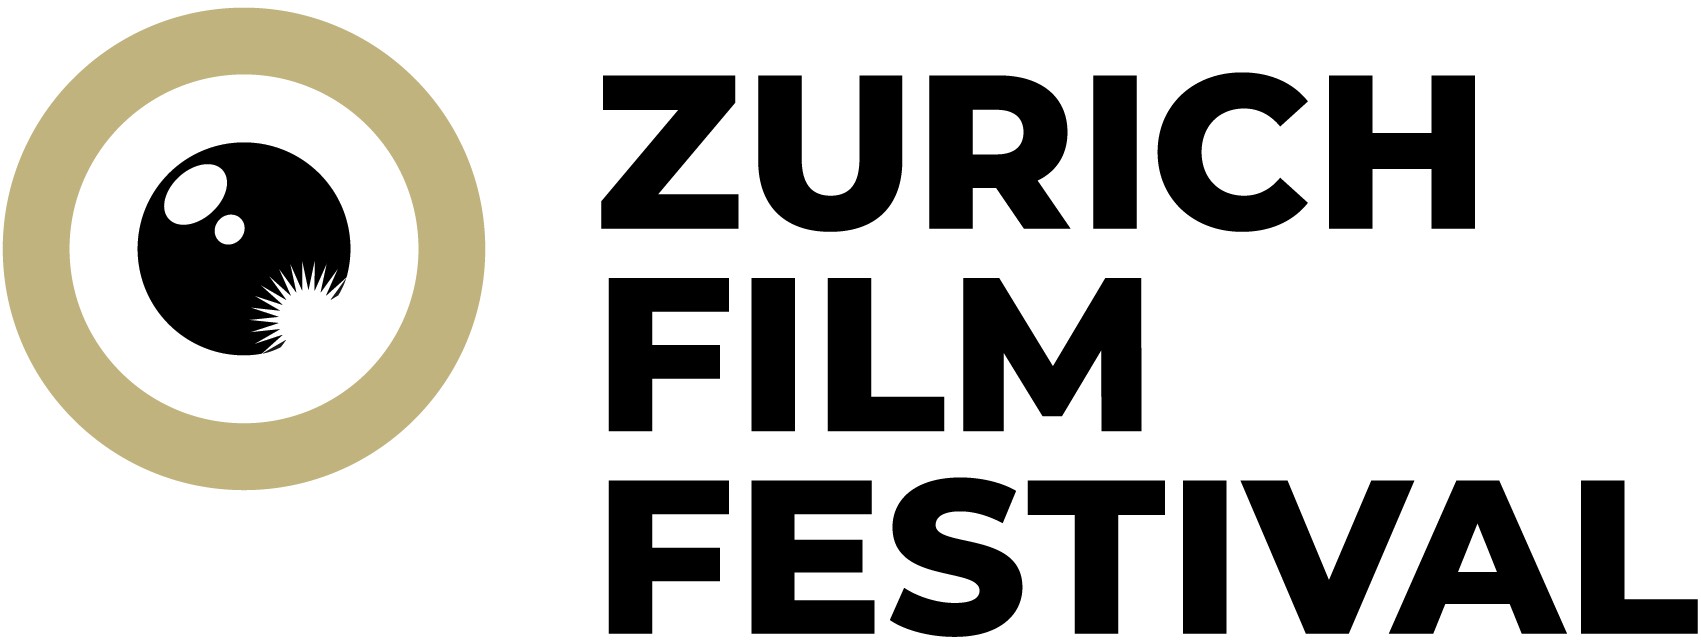 18. Zurich Film Festival